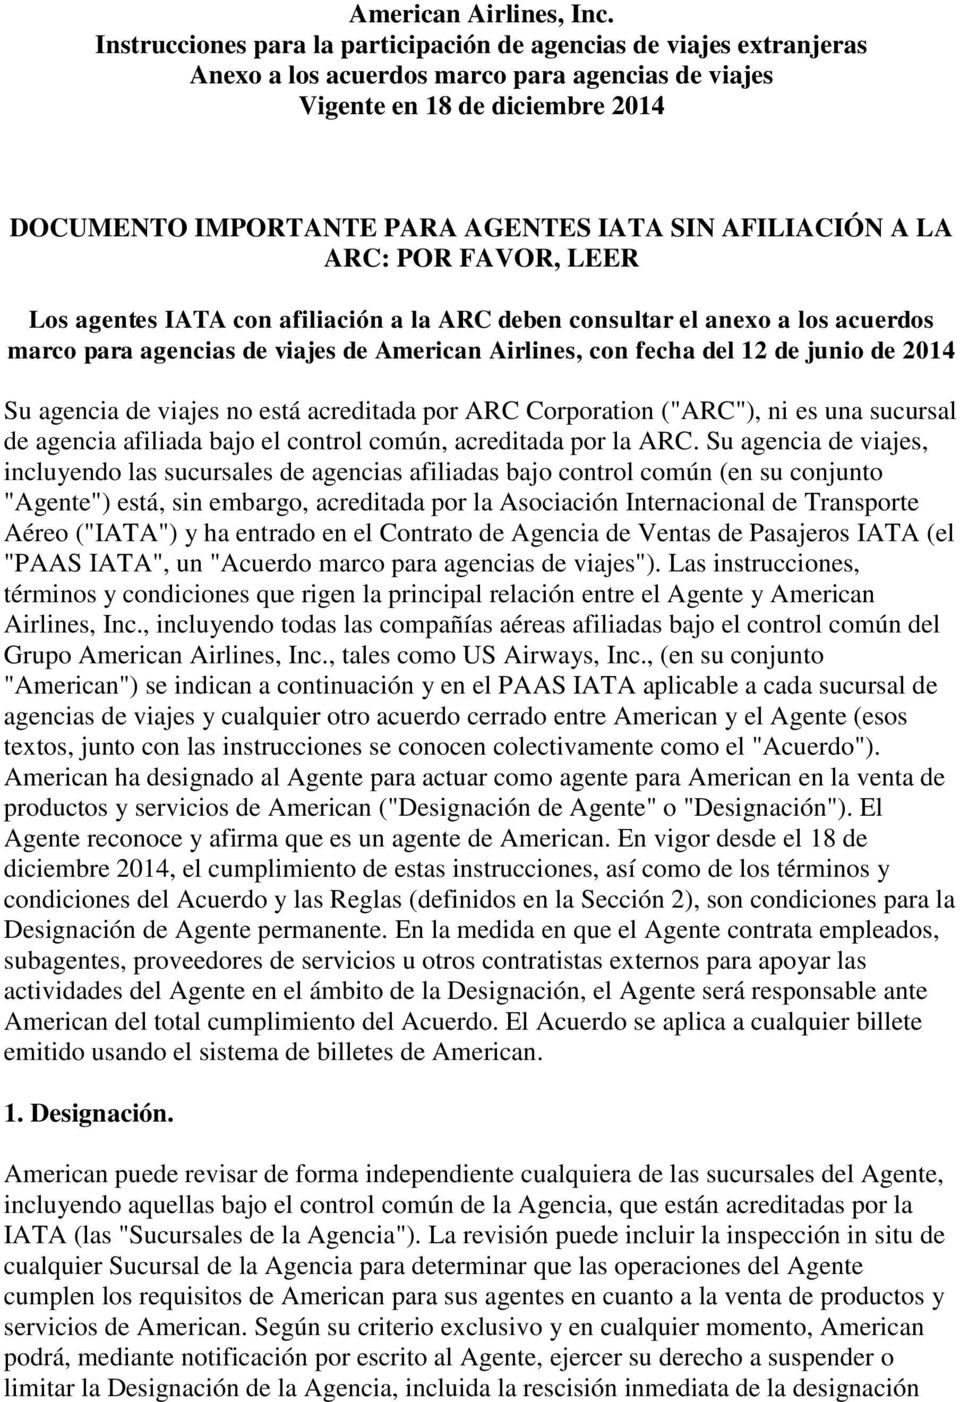 AFILIACIÓN A LA ARC: POR FAVOR, LEER Los agentes IATA con afiliación a la ARC deben consultar el anexo a los acuerdos marco para agencias de viajes de American Airlines, con fecha del 12 de junio de